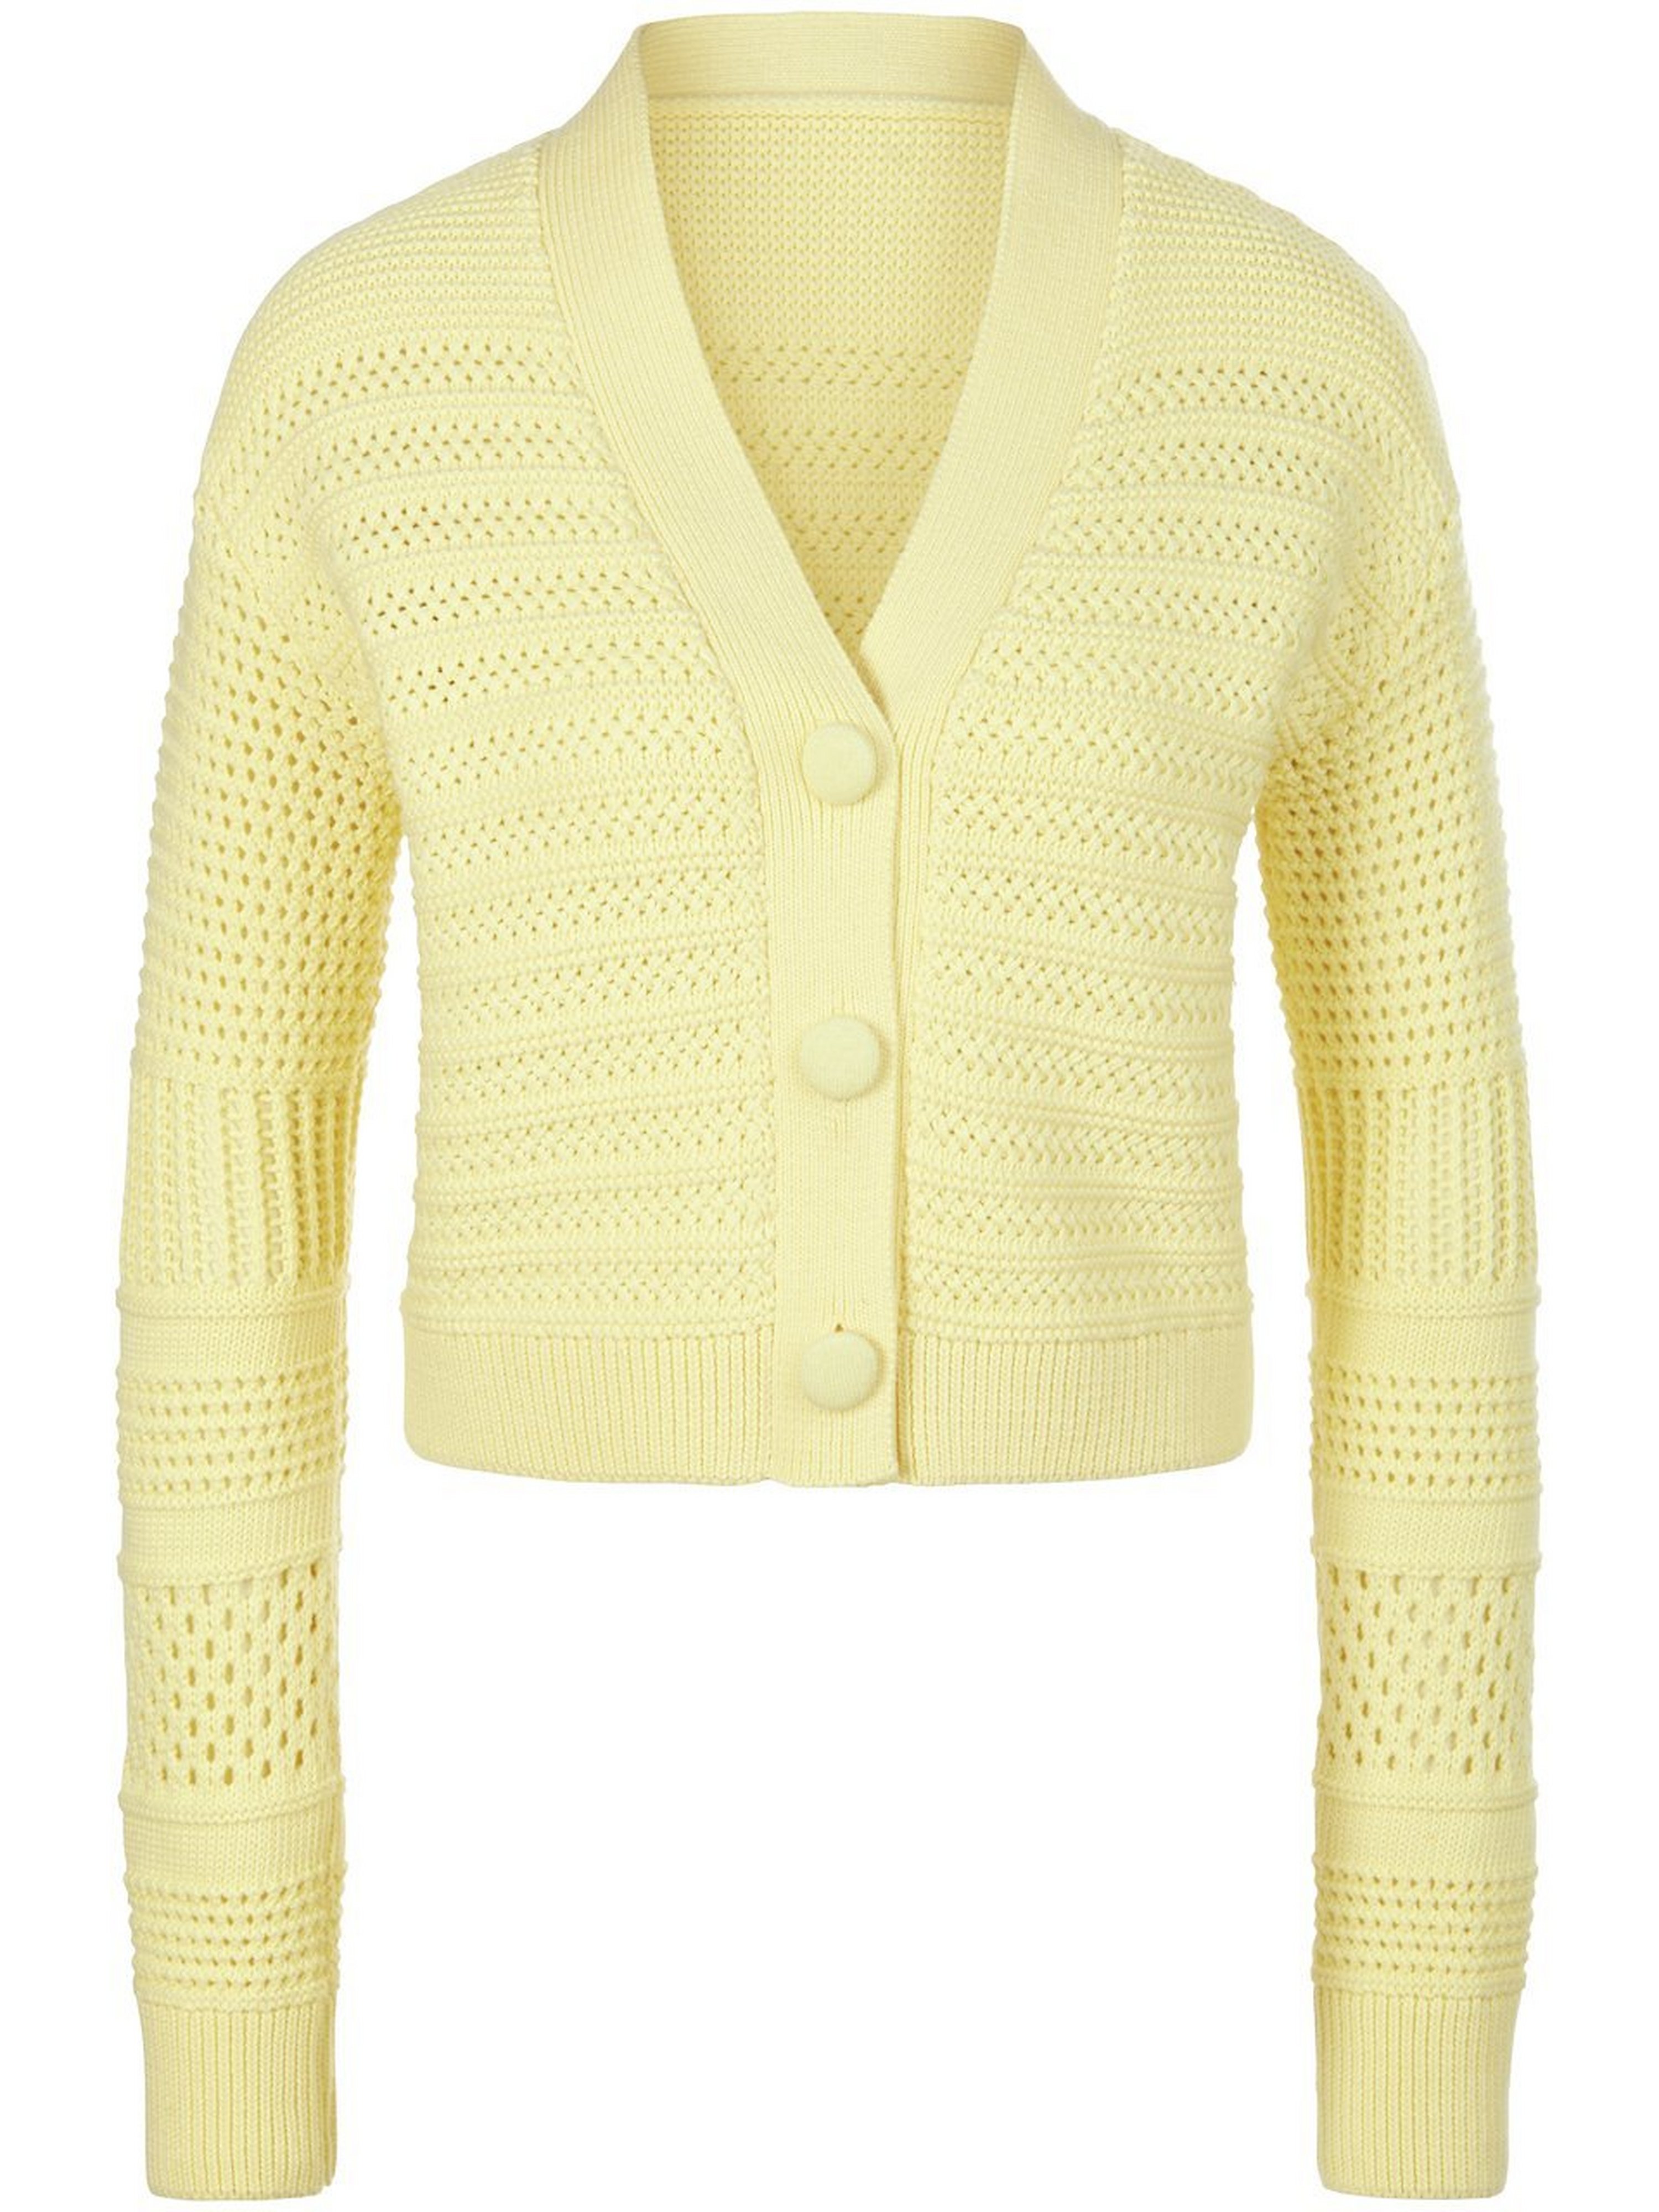 La veste tricot  Saint Mignar jaune taille 38